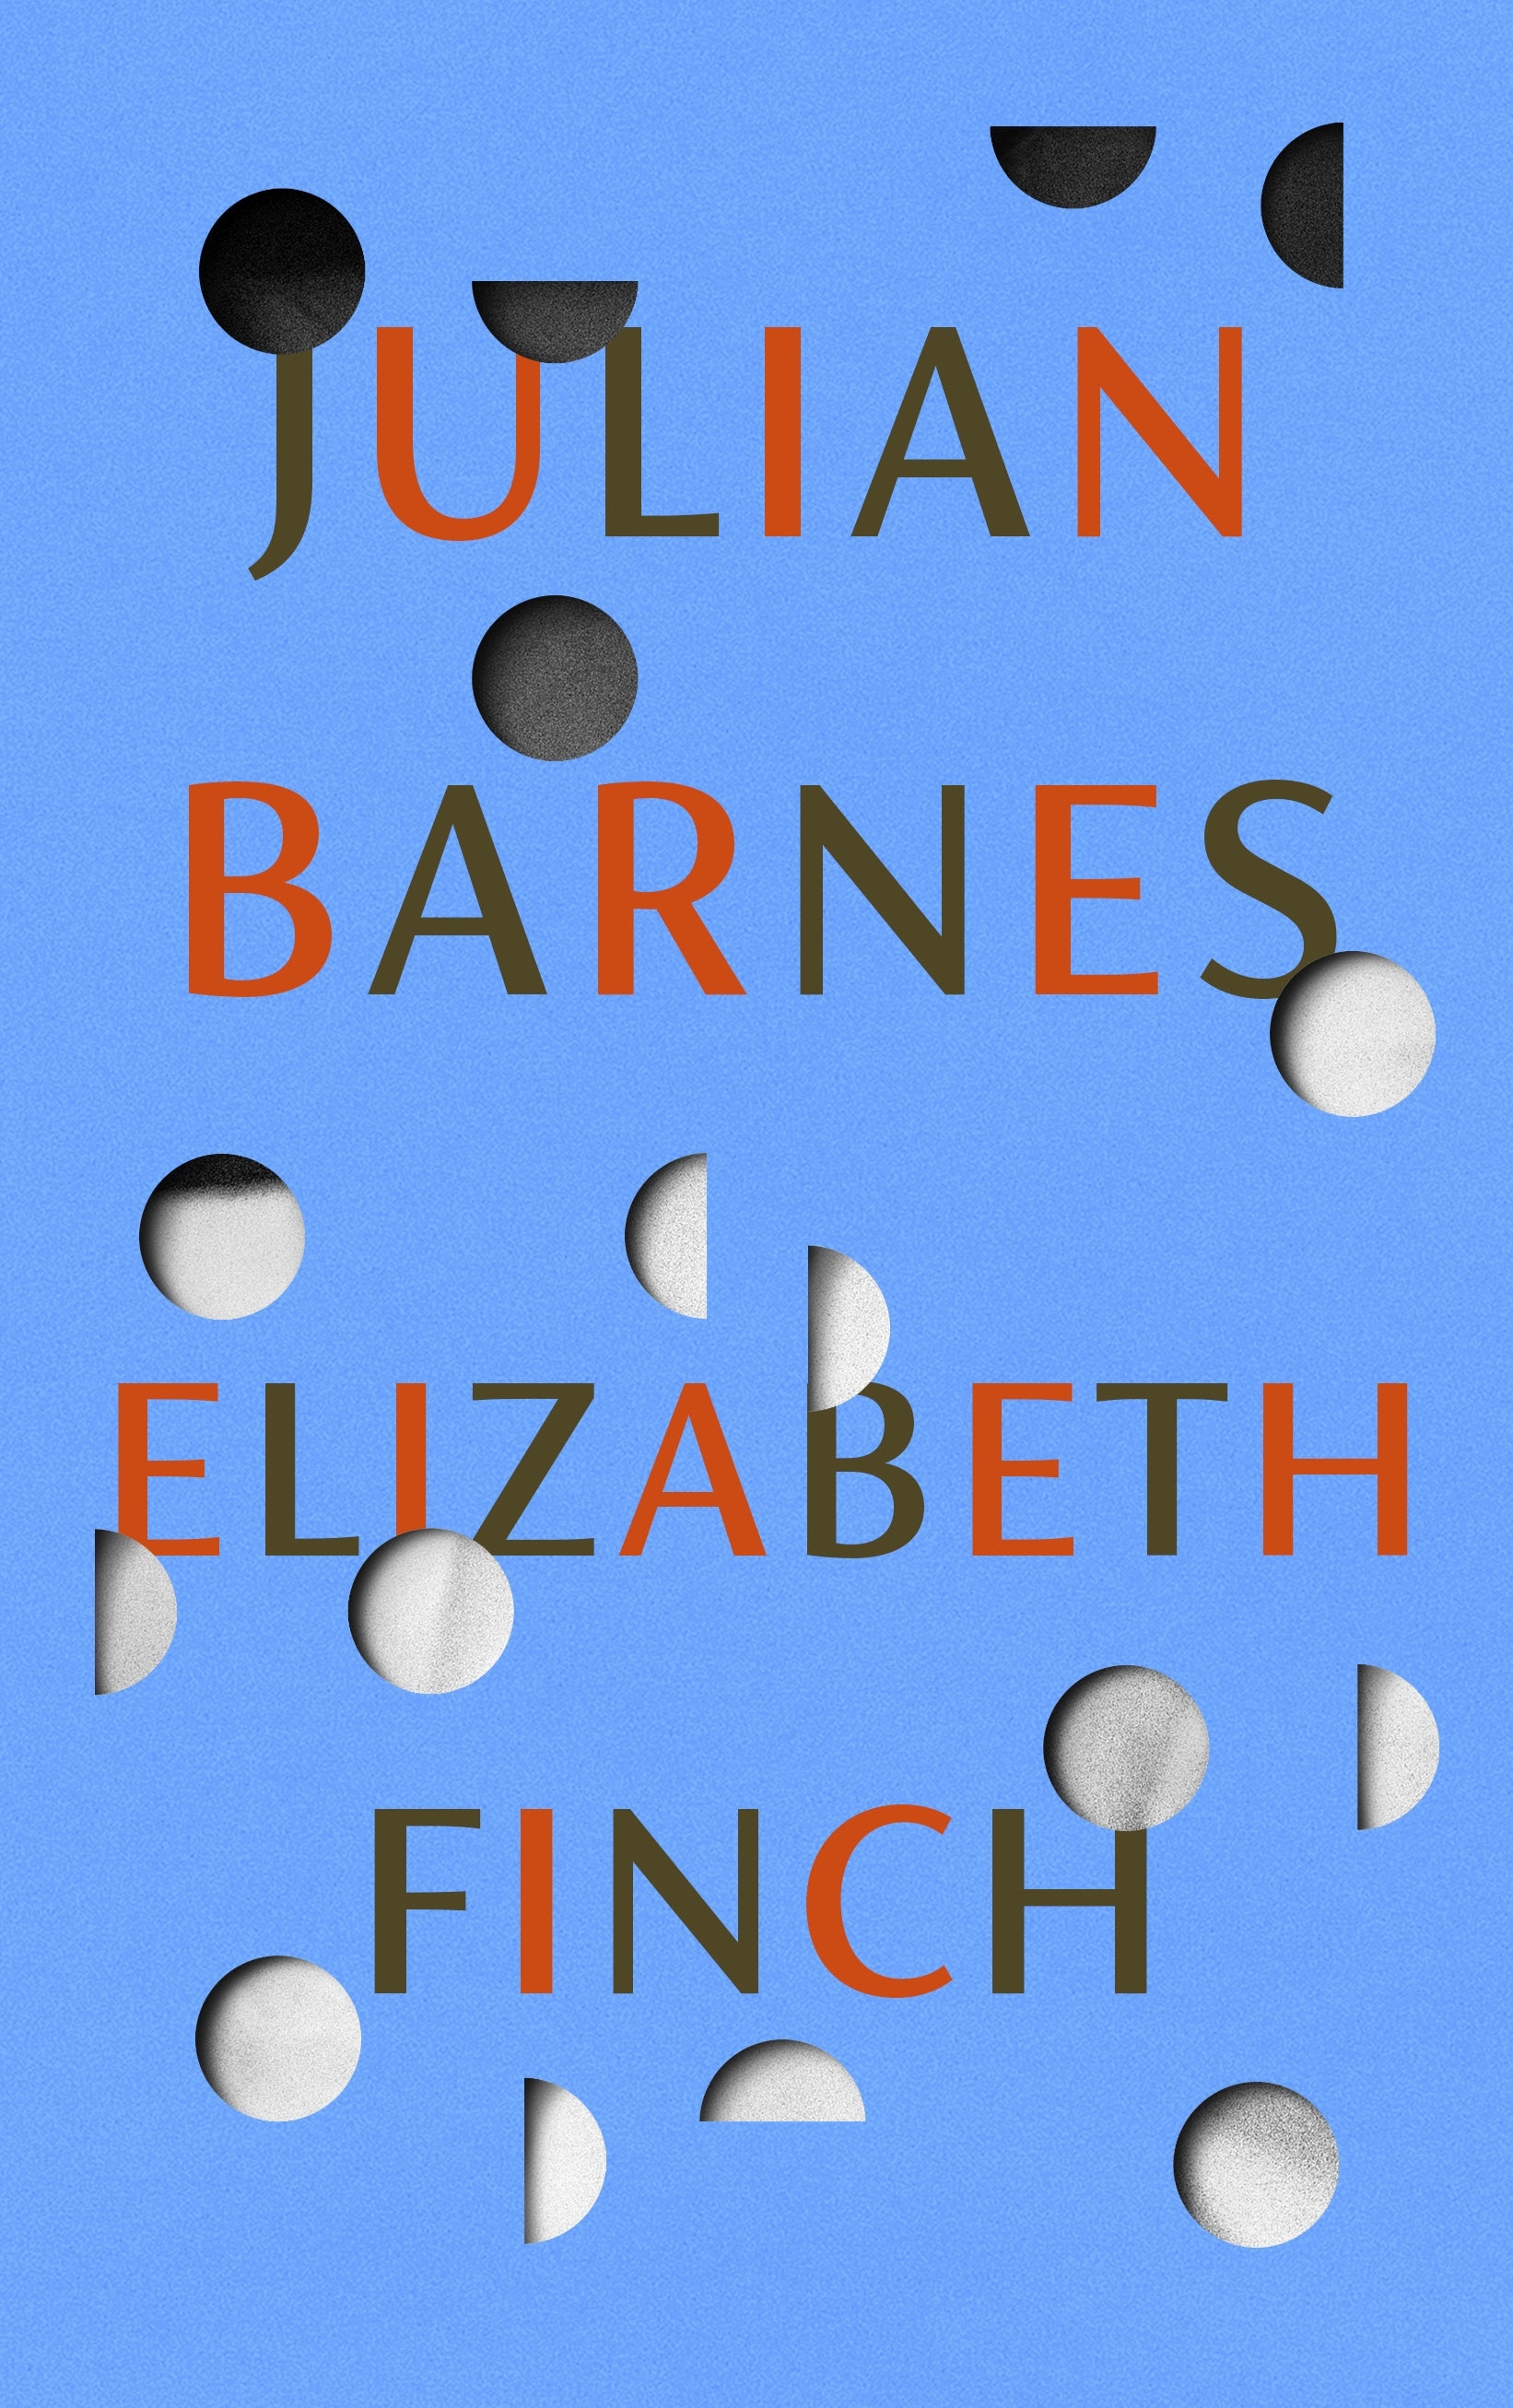 Book “Elizabeth Finch” by Julian Barnes — April 14, 2022